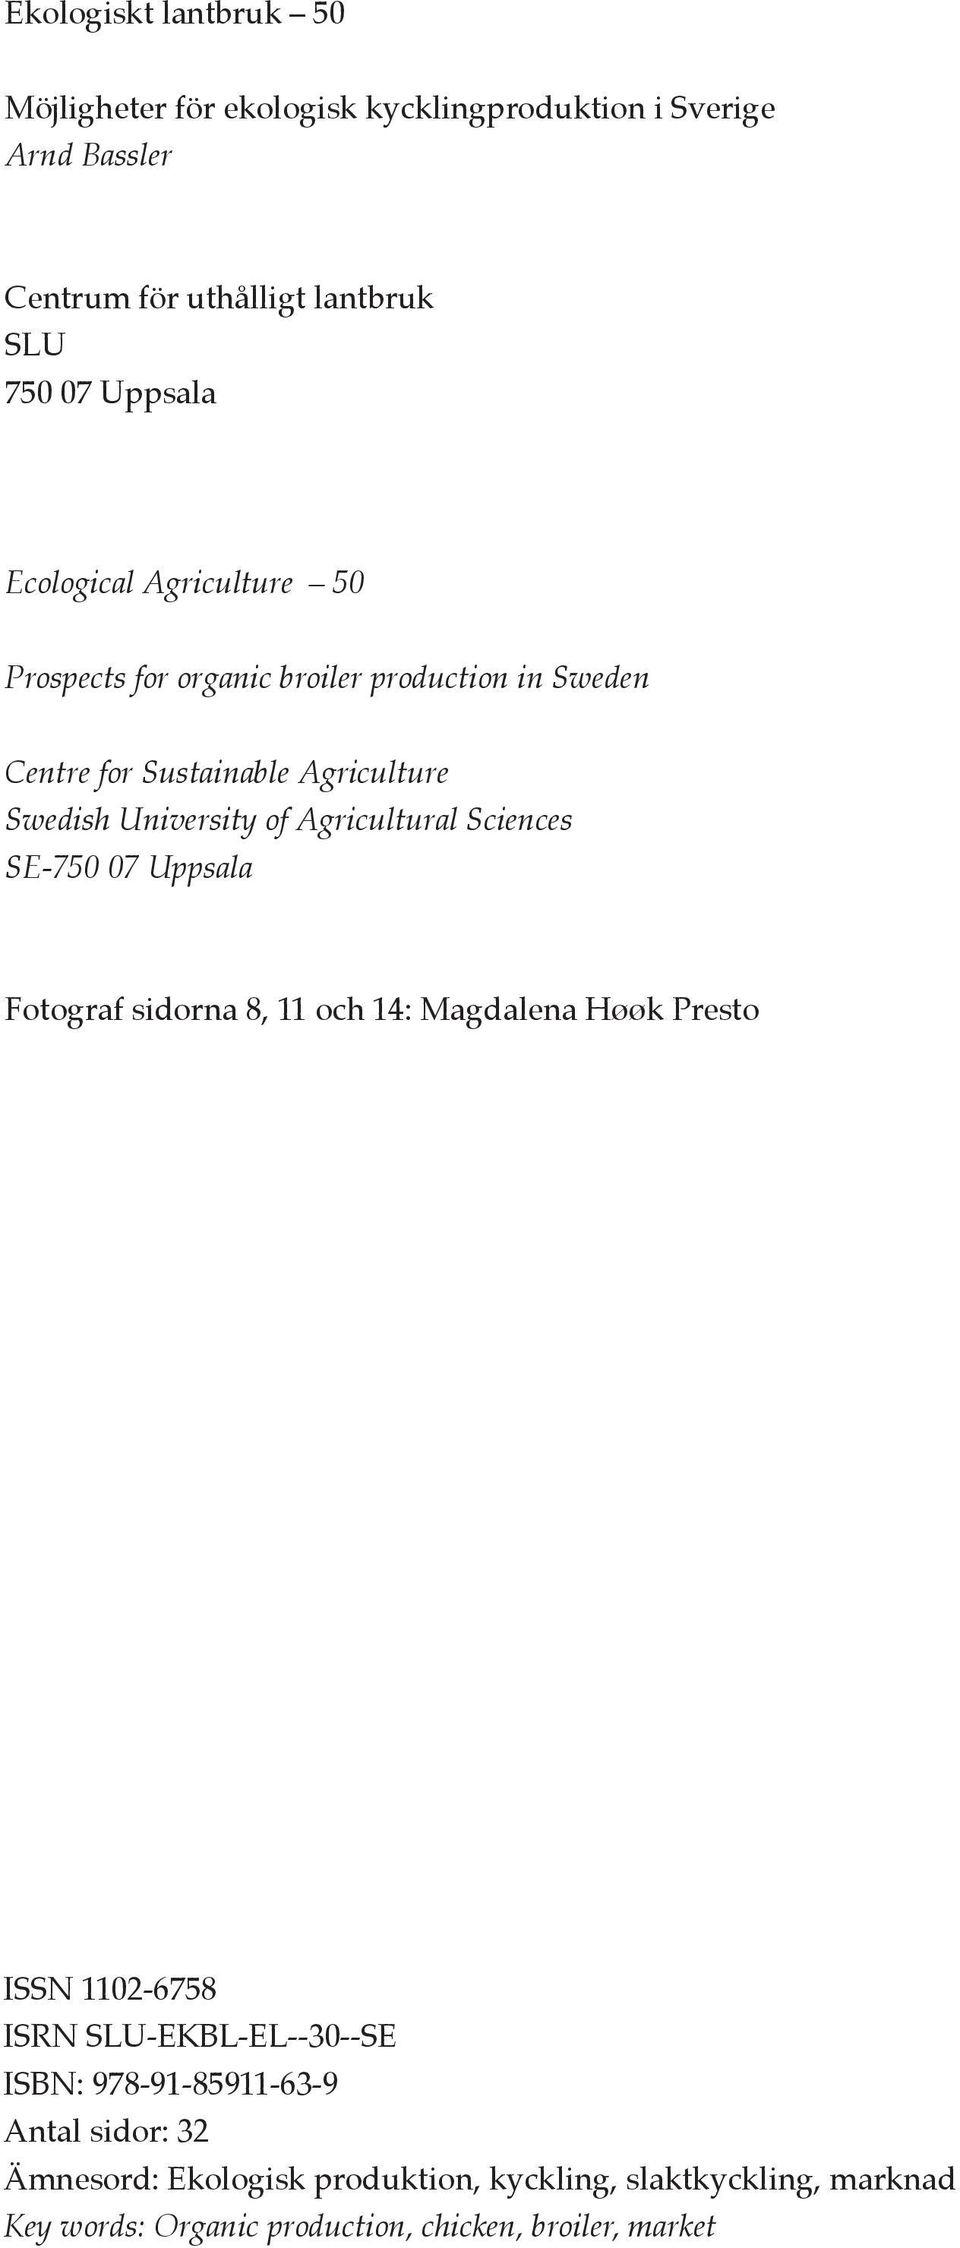 Agricultural Sciences SE-750 07 Uppsala Fotograf sidorna 8, 11 och 14: Magdalena Høøk Presto ISSN 1102-6758 ISRN SLU-EKBL-EL--30--SE ISBN: